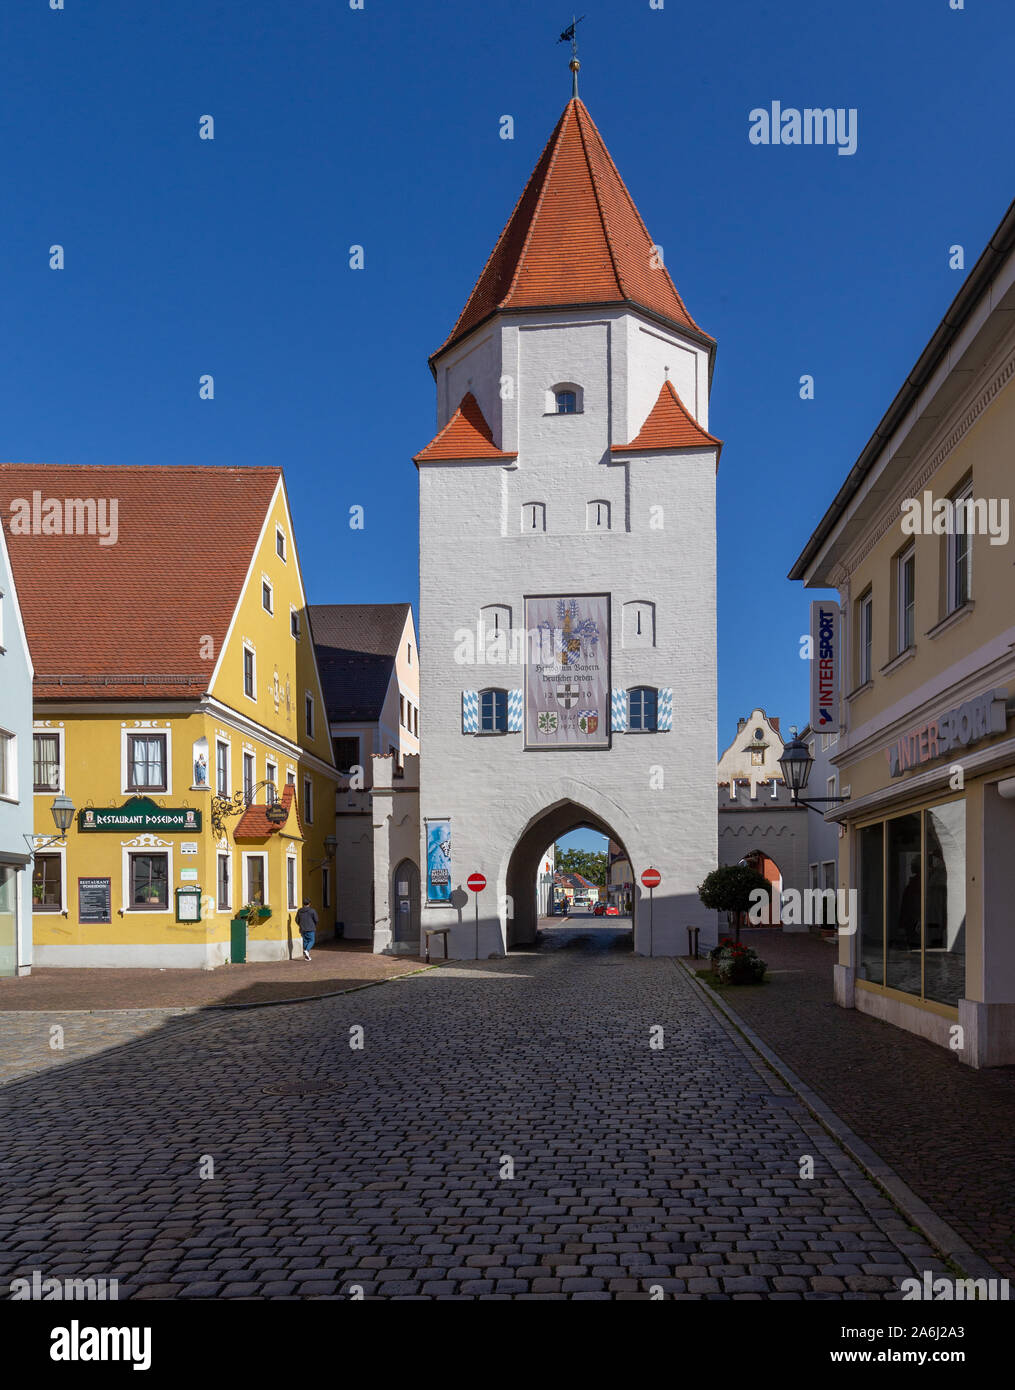 Aichach, petite ville de l'Allemagne Banque D'Images